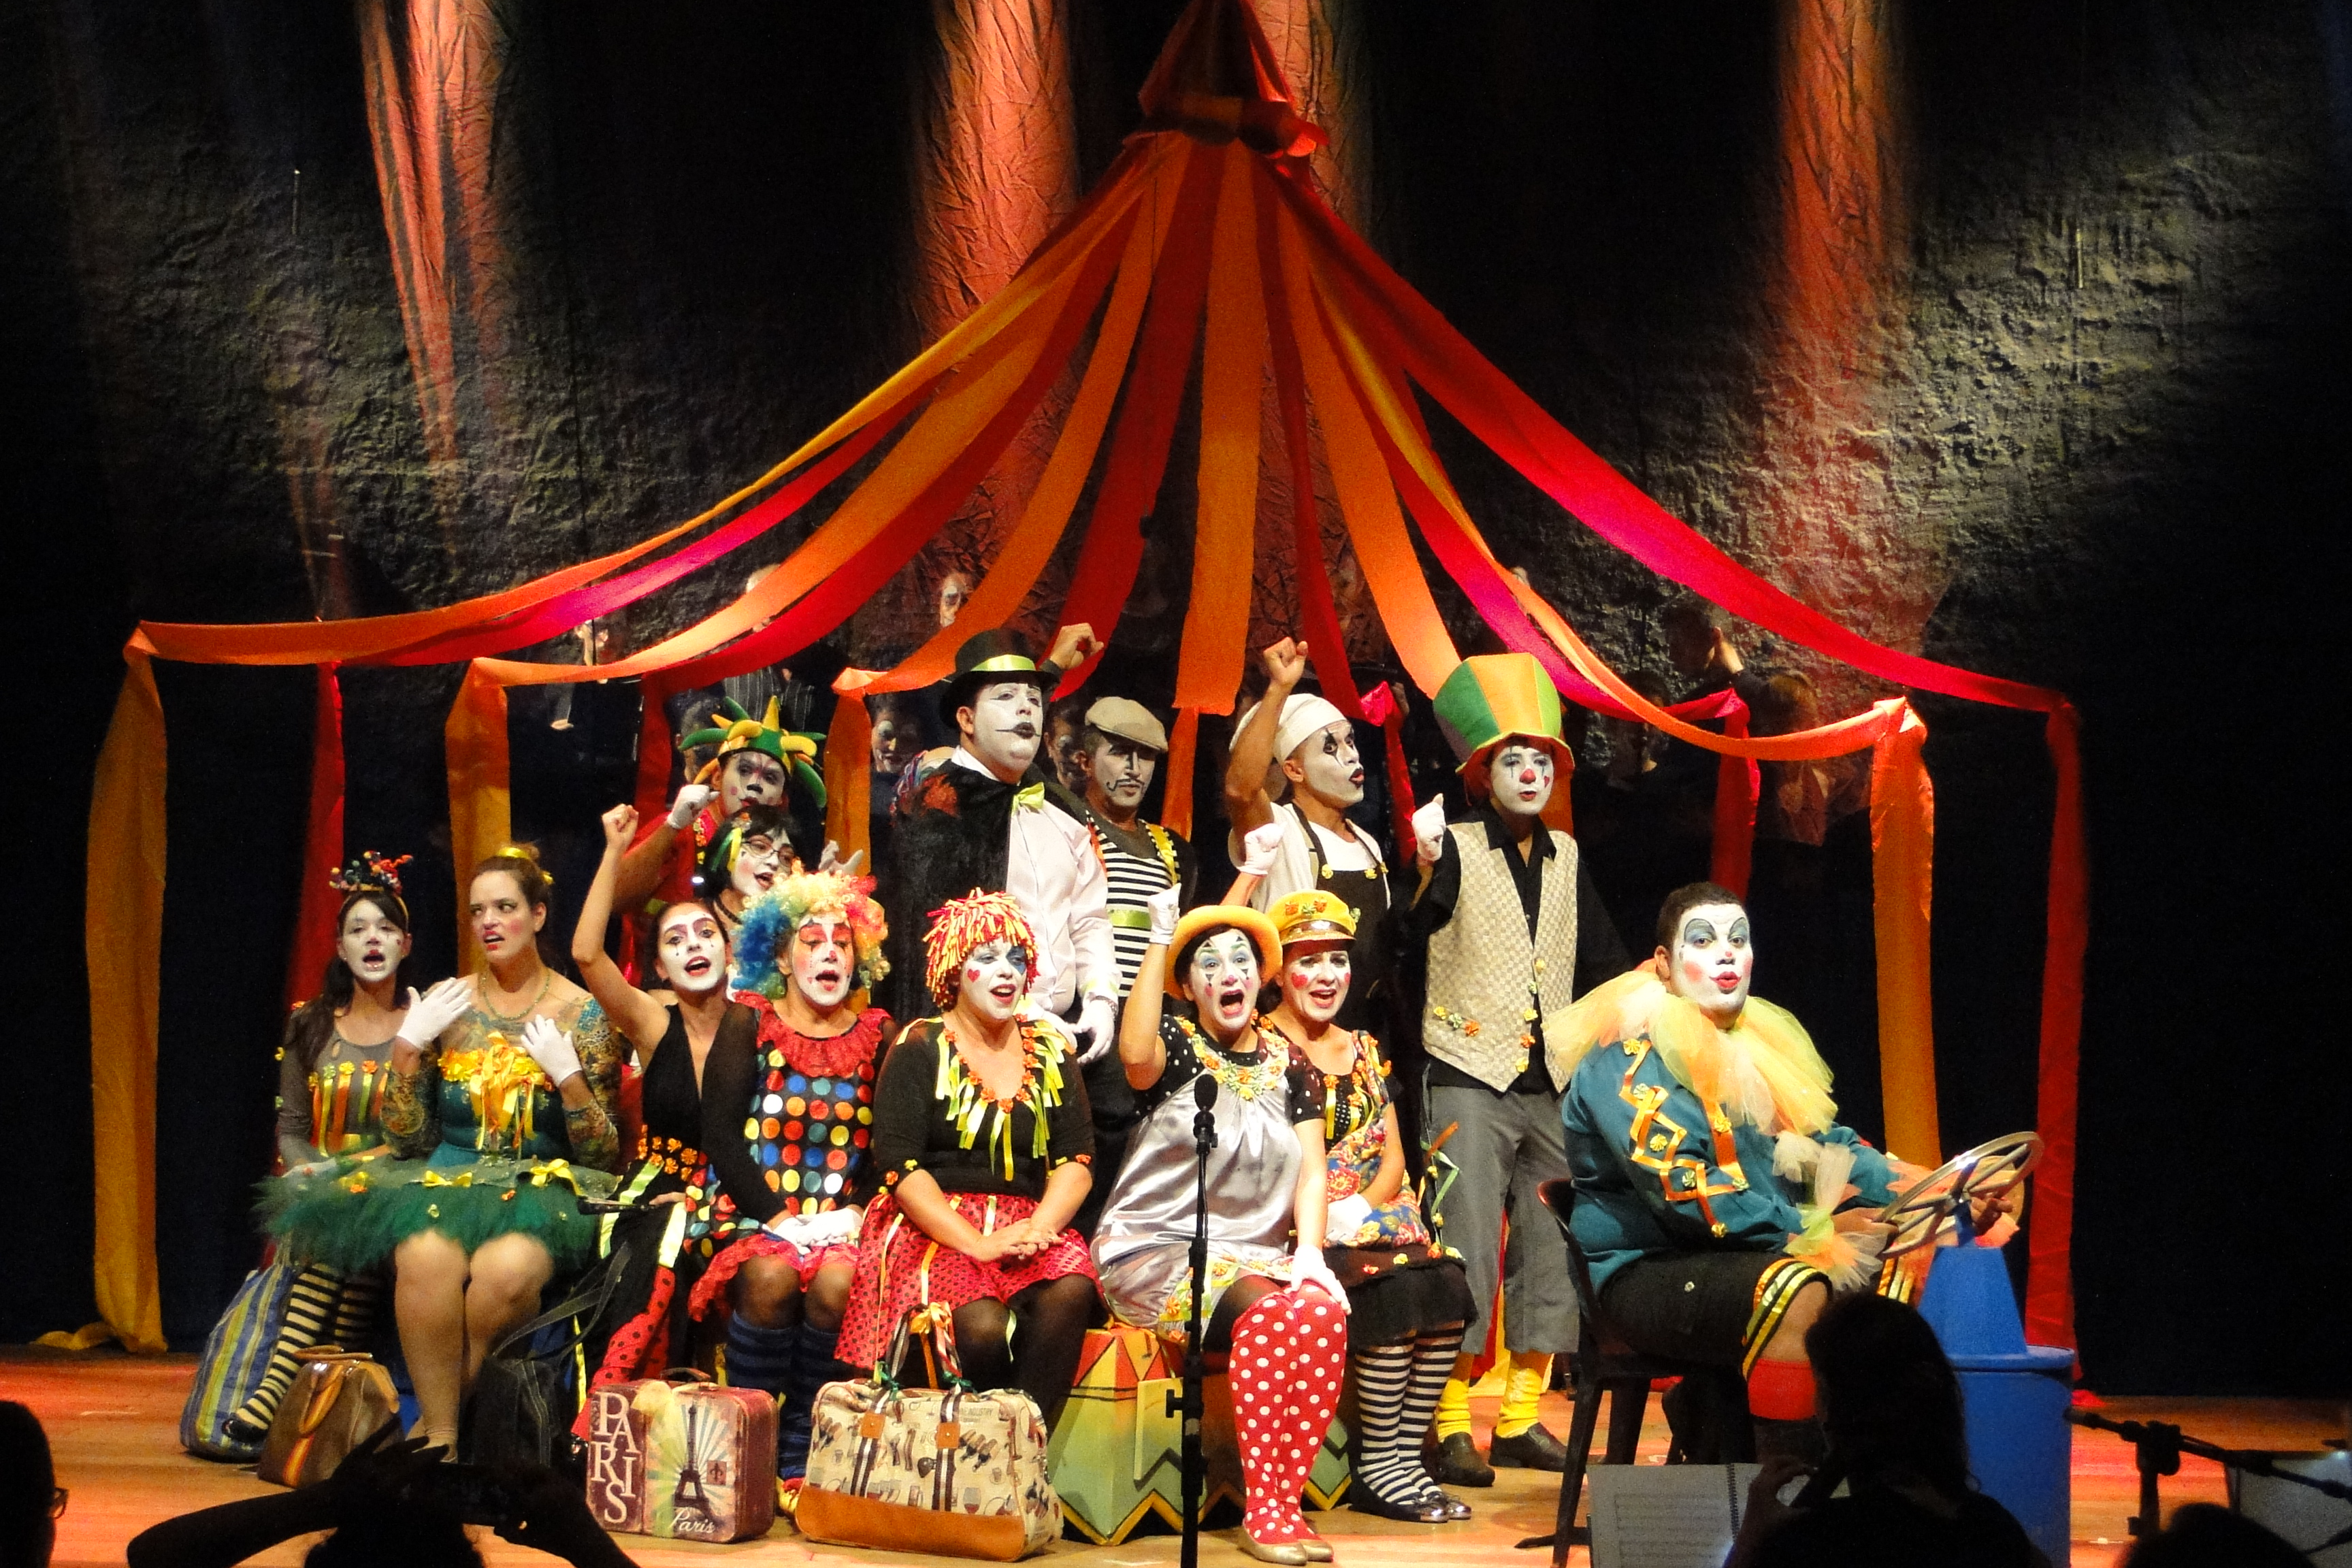 Espetáculo "O Circo vem aí" é atração de hoje, 22, no Teatro do IFG - Câmpus  Goiânia.